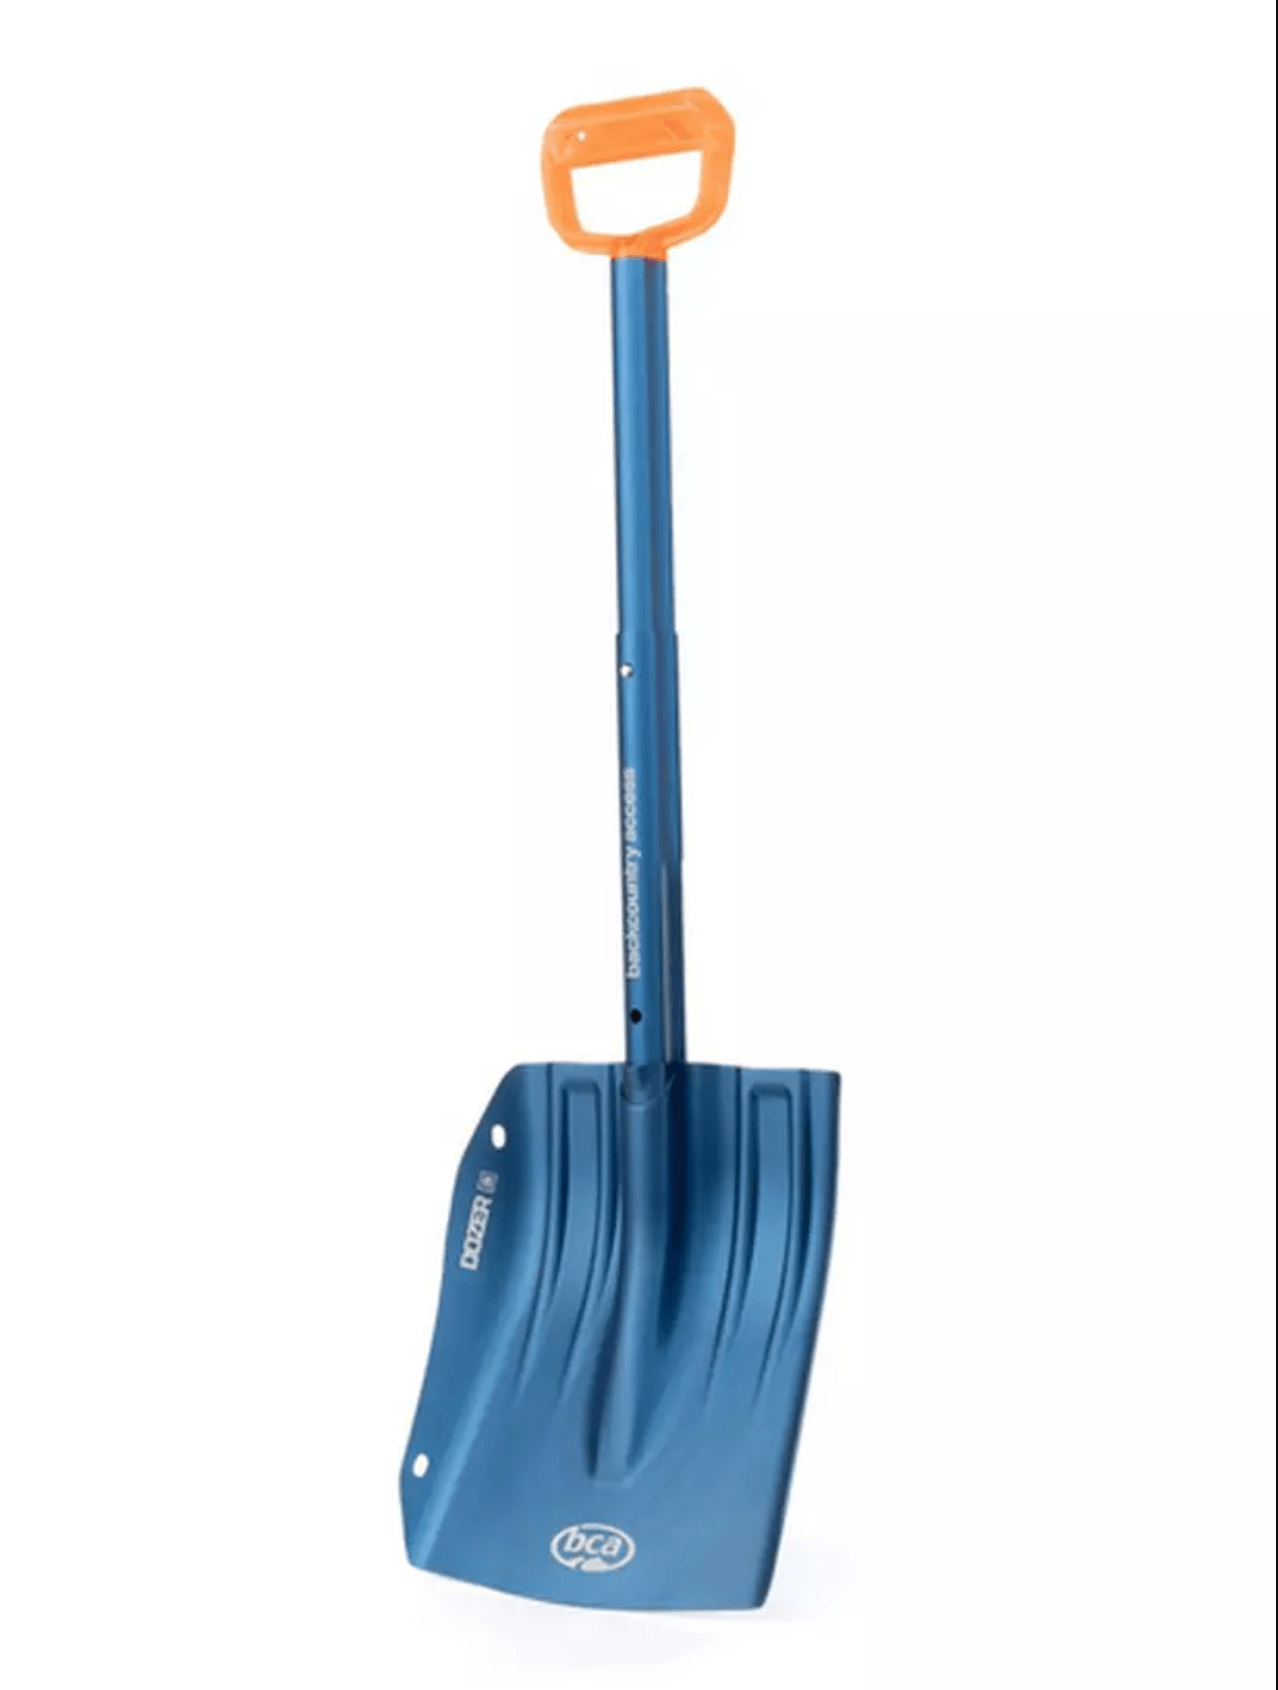 BCA Dozer 2D Avalanche Shovel Blue Backcountry Shovels BCA - Backcountry Access 